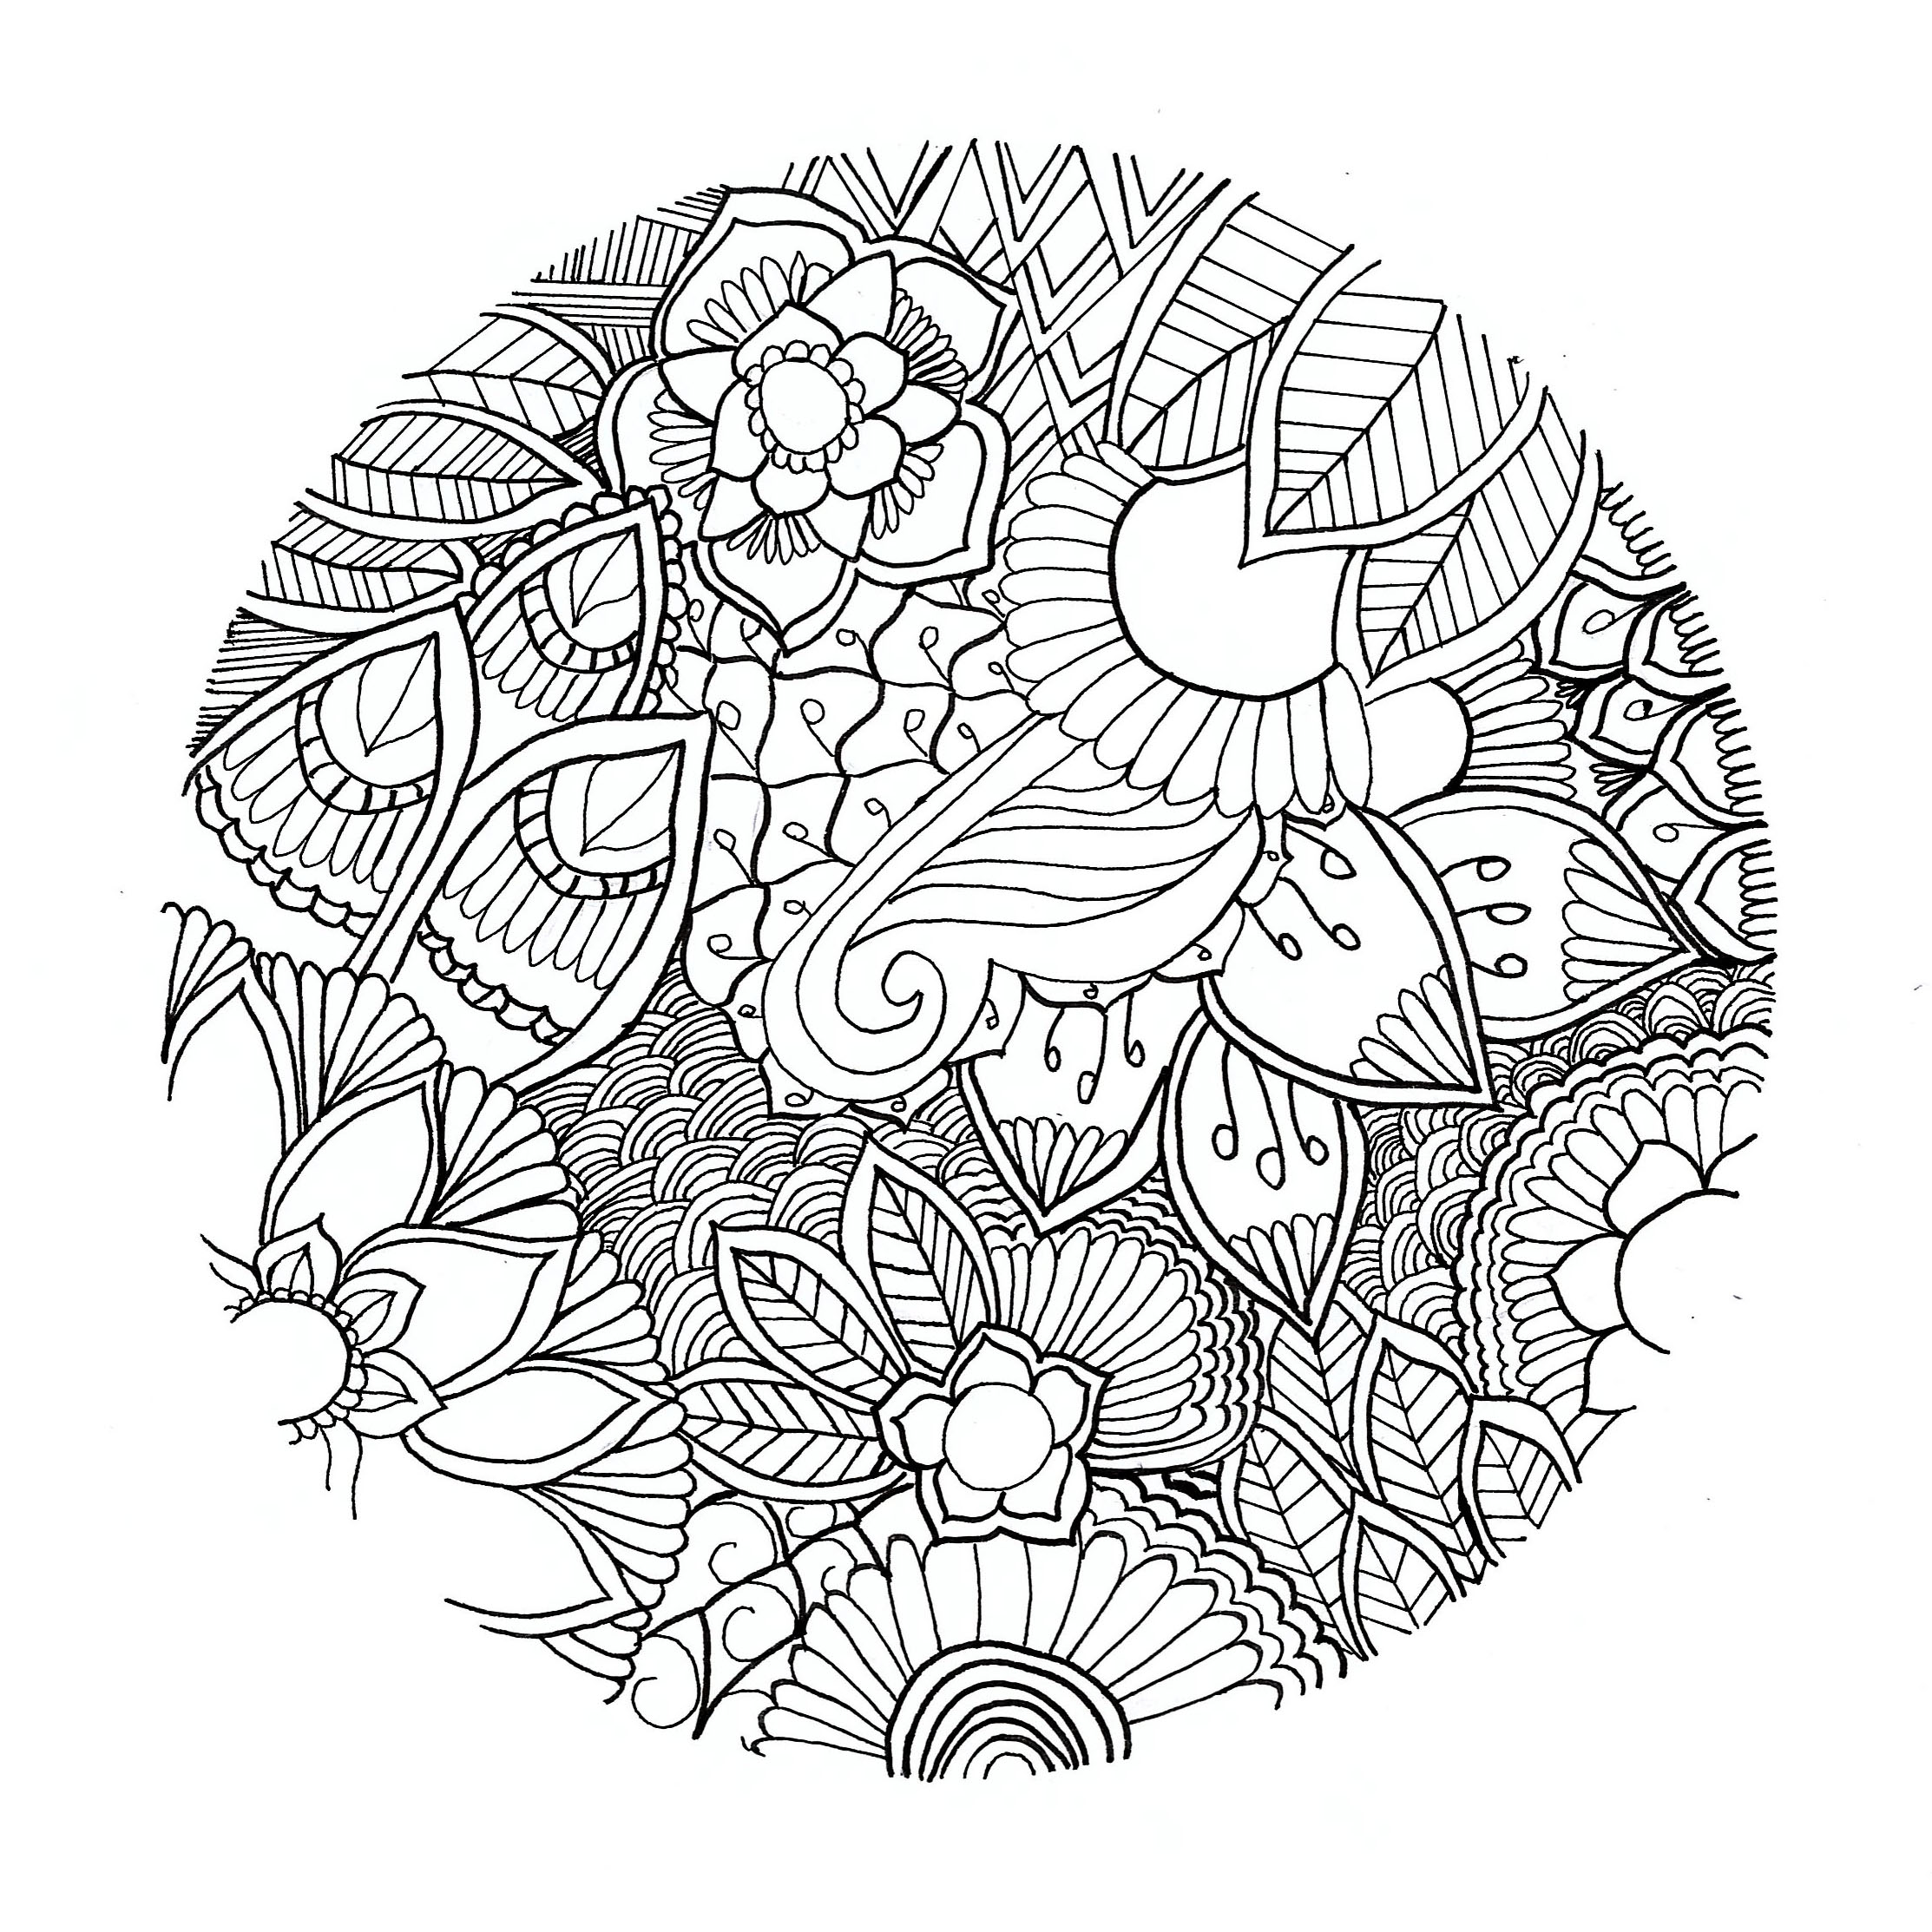 Un mandala floral original y muy ligero, ¡sin contorno! Por Chloé. Es un círculo con flores dibujadas de forma realista y no simétrica.